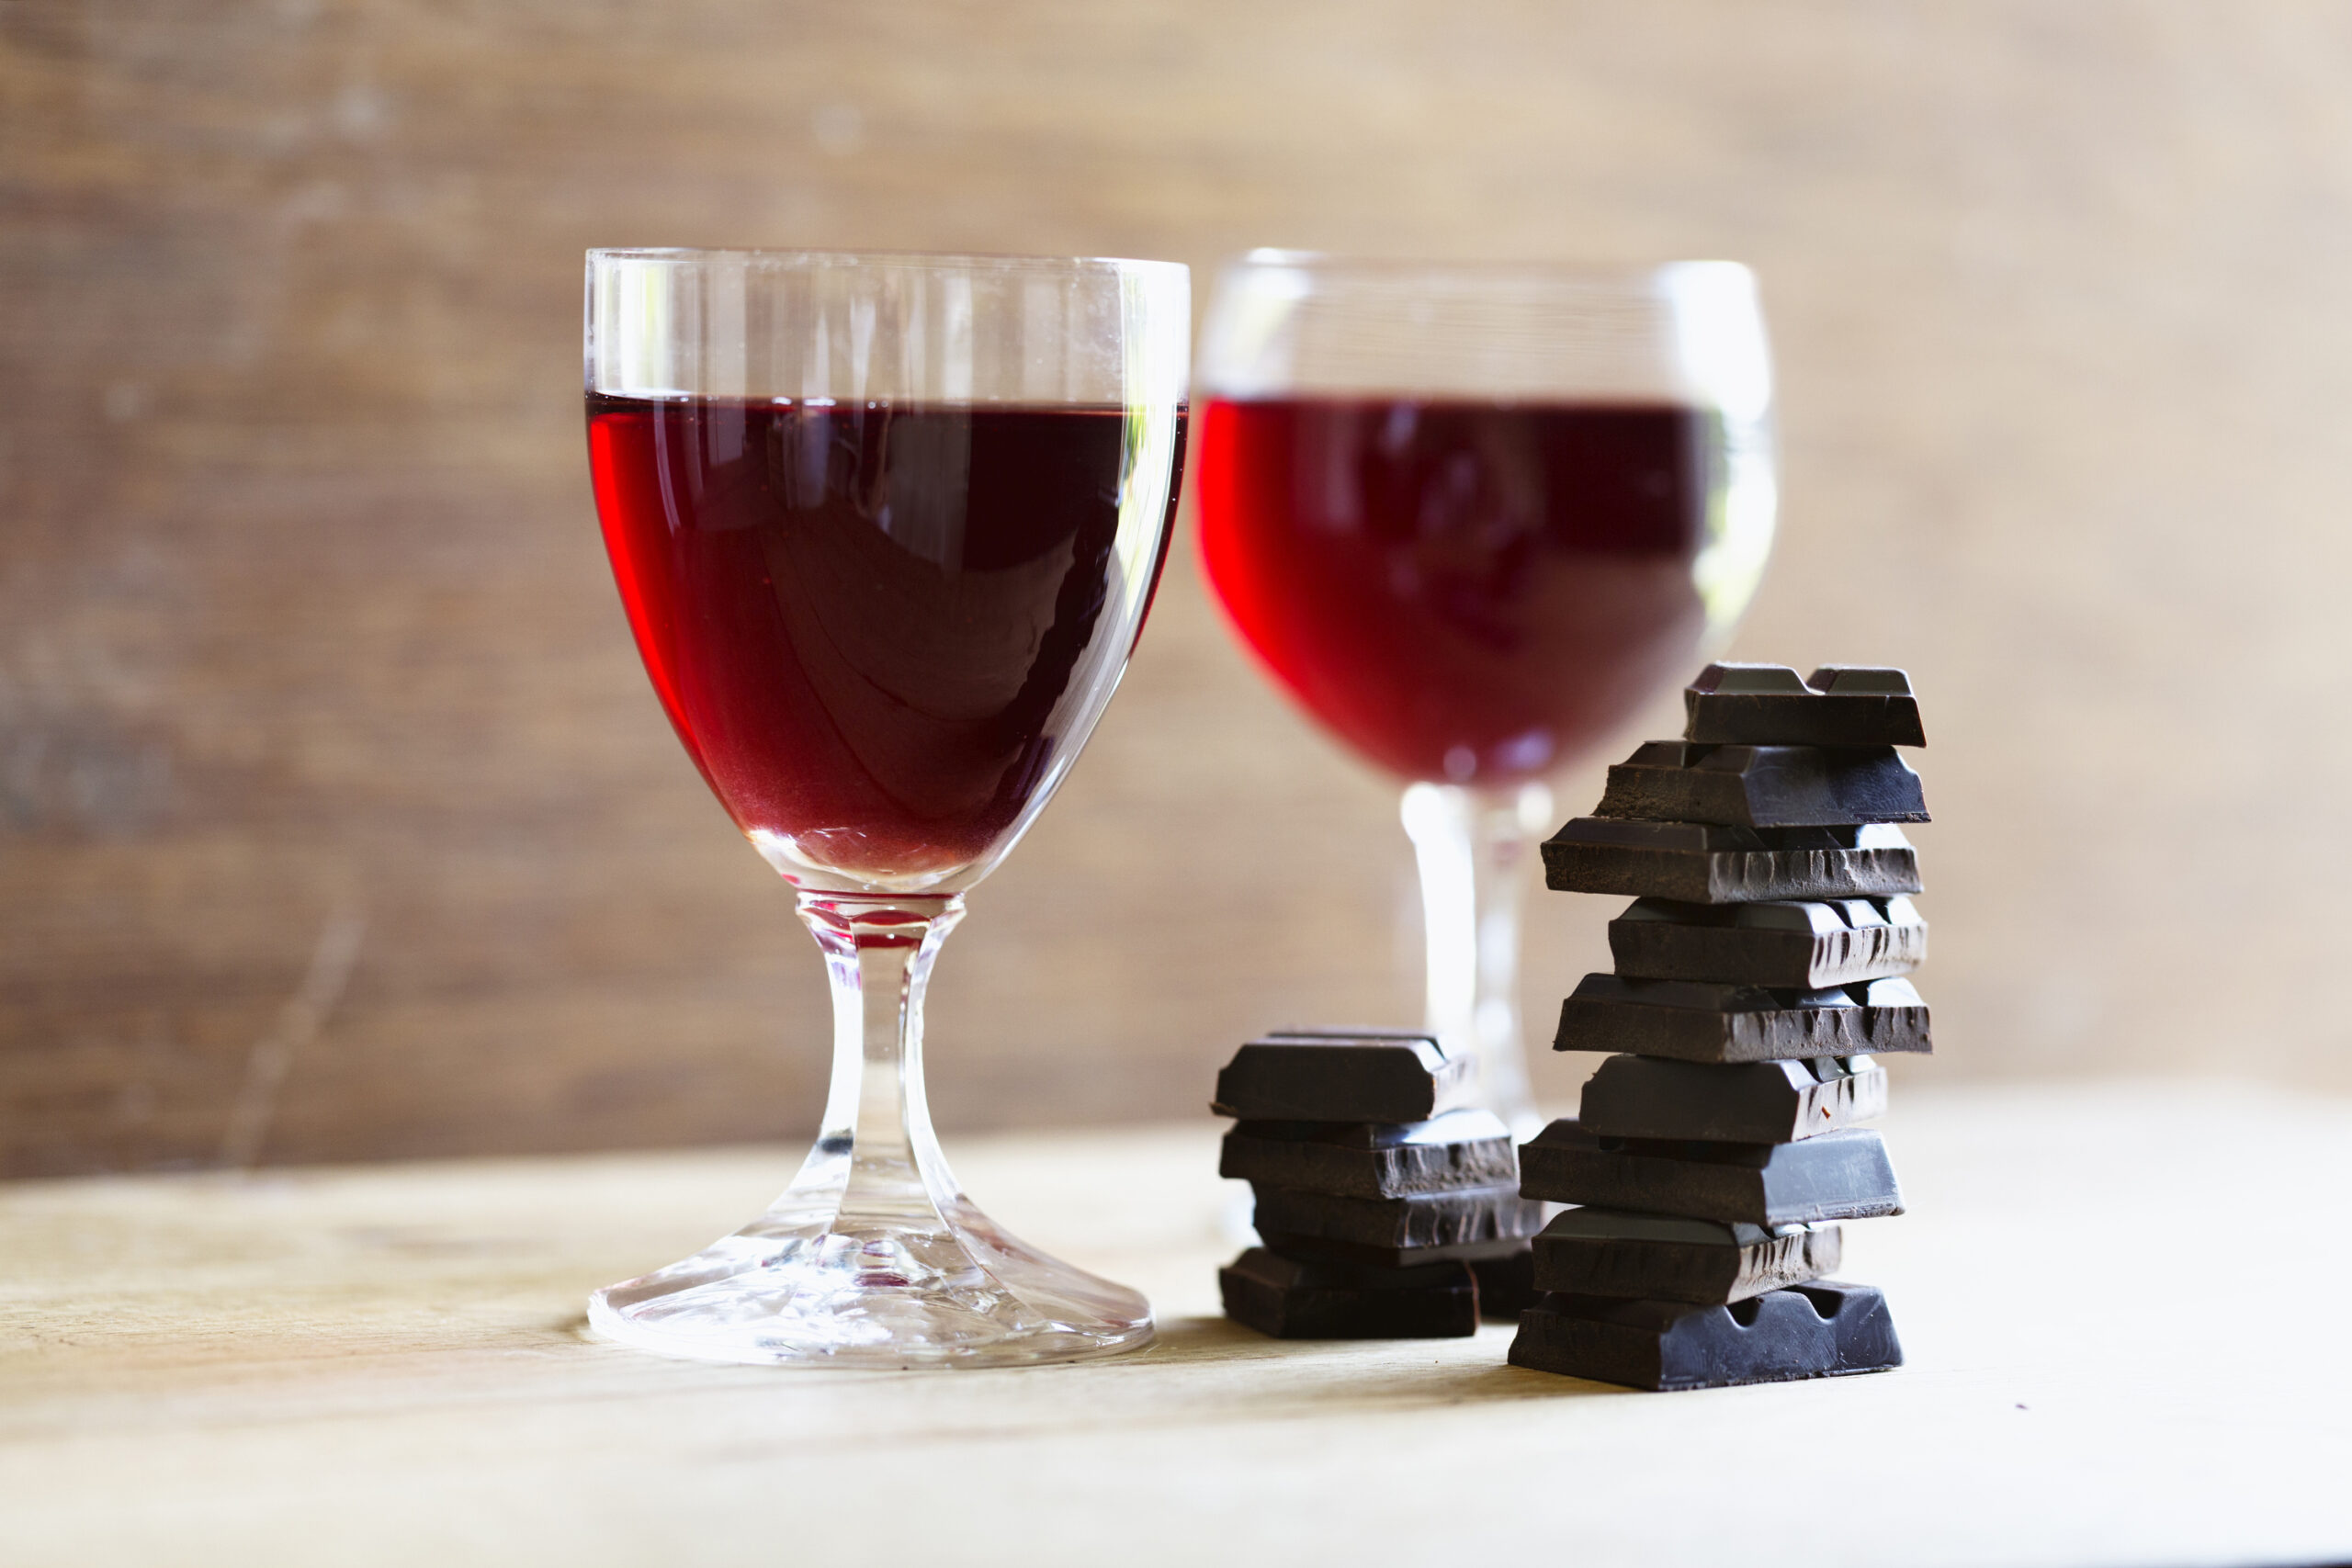 misturar Vinho com Chocolate faz mal